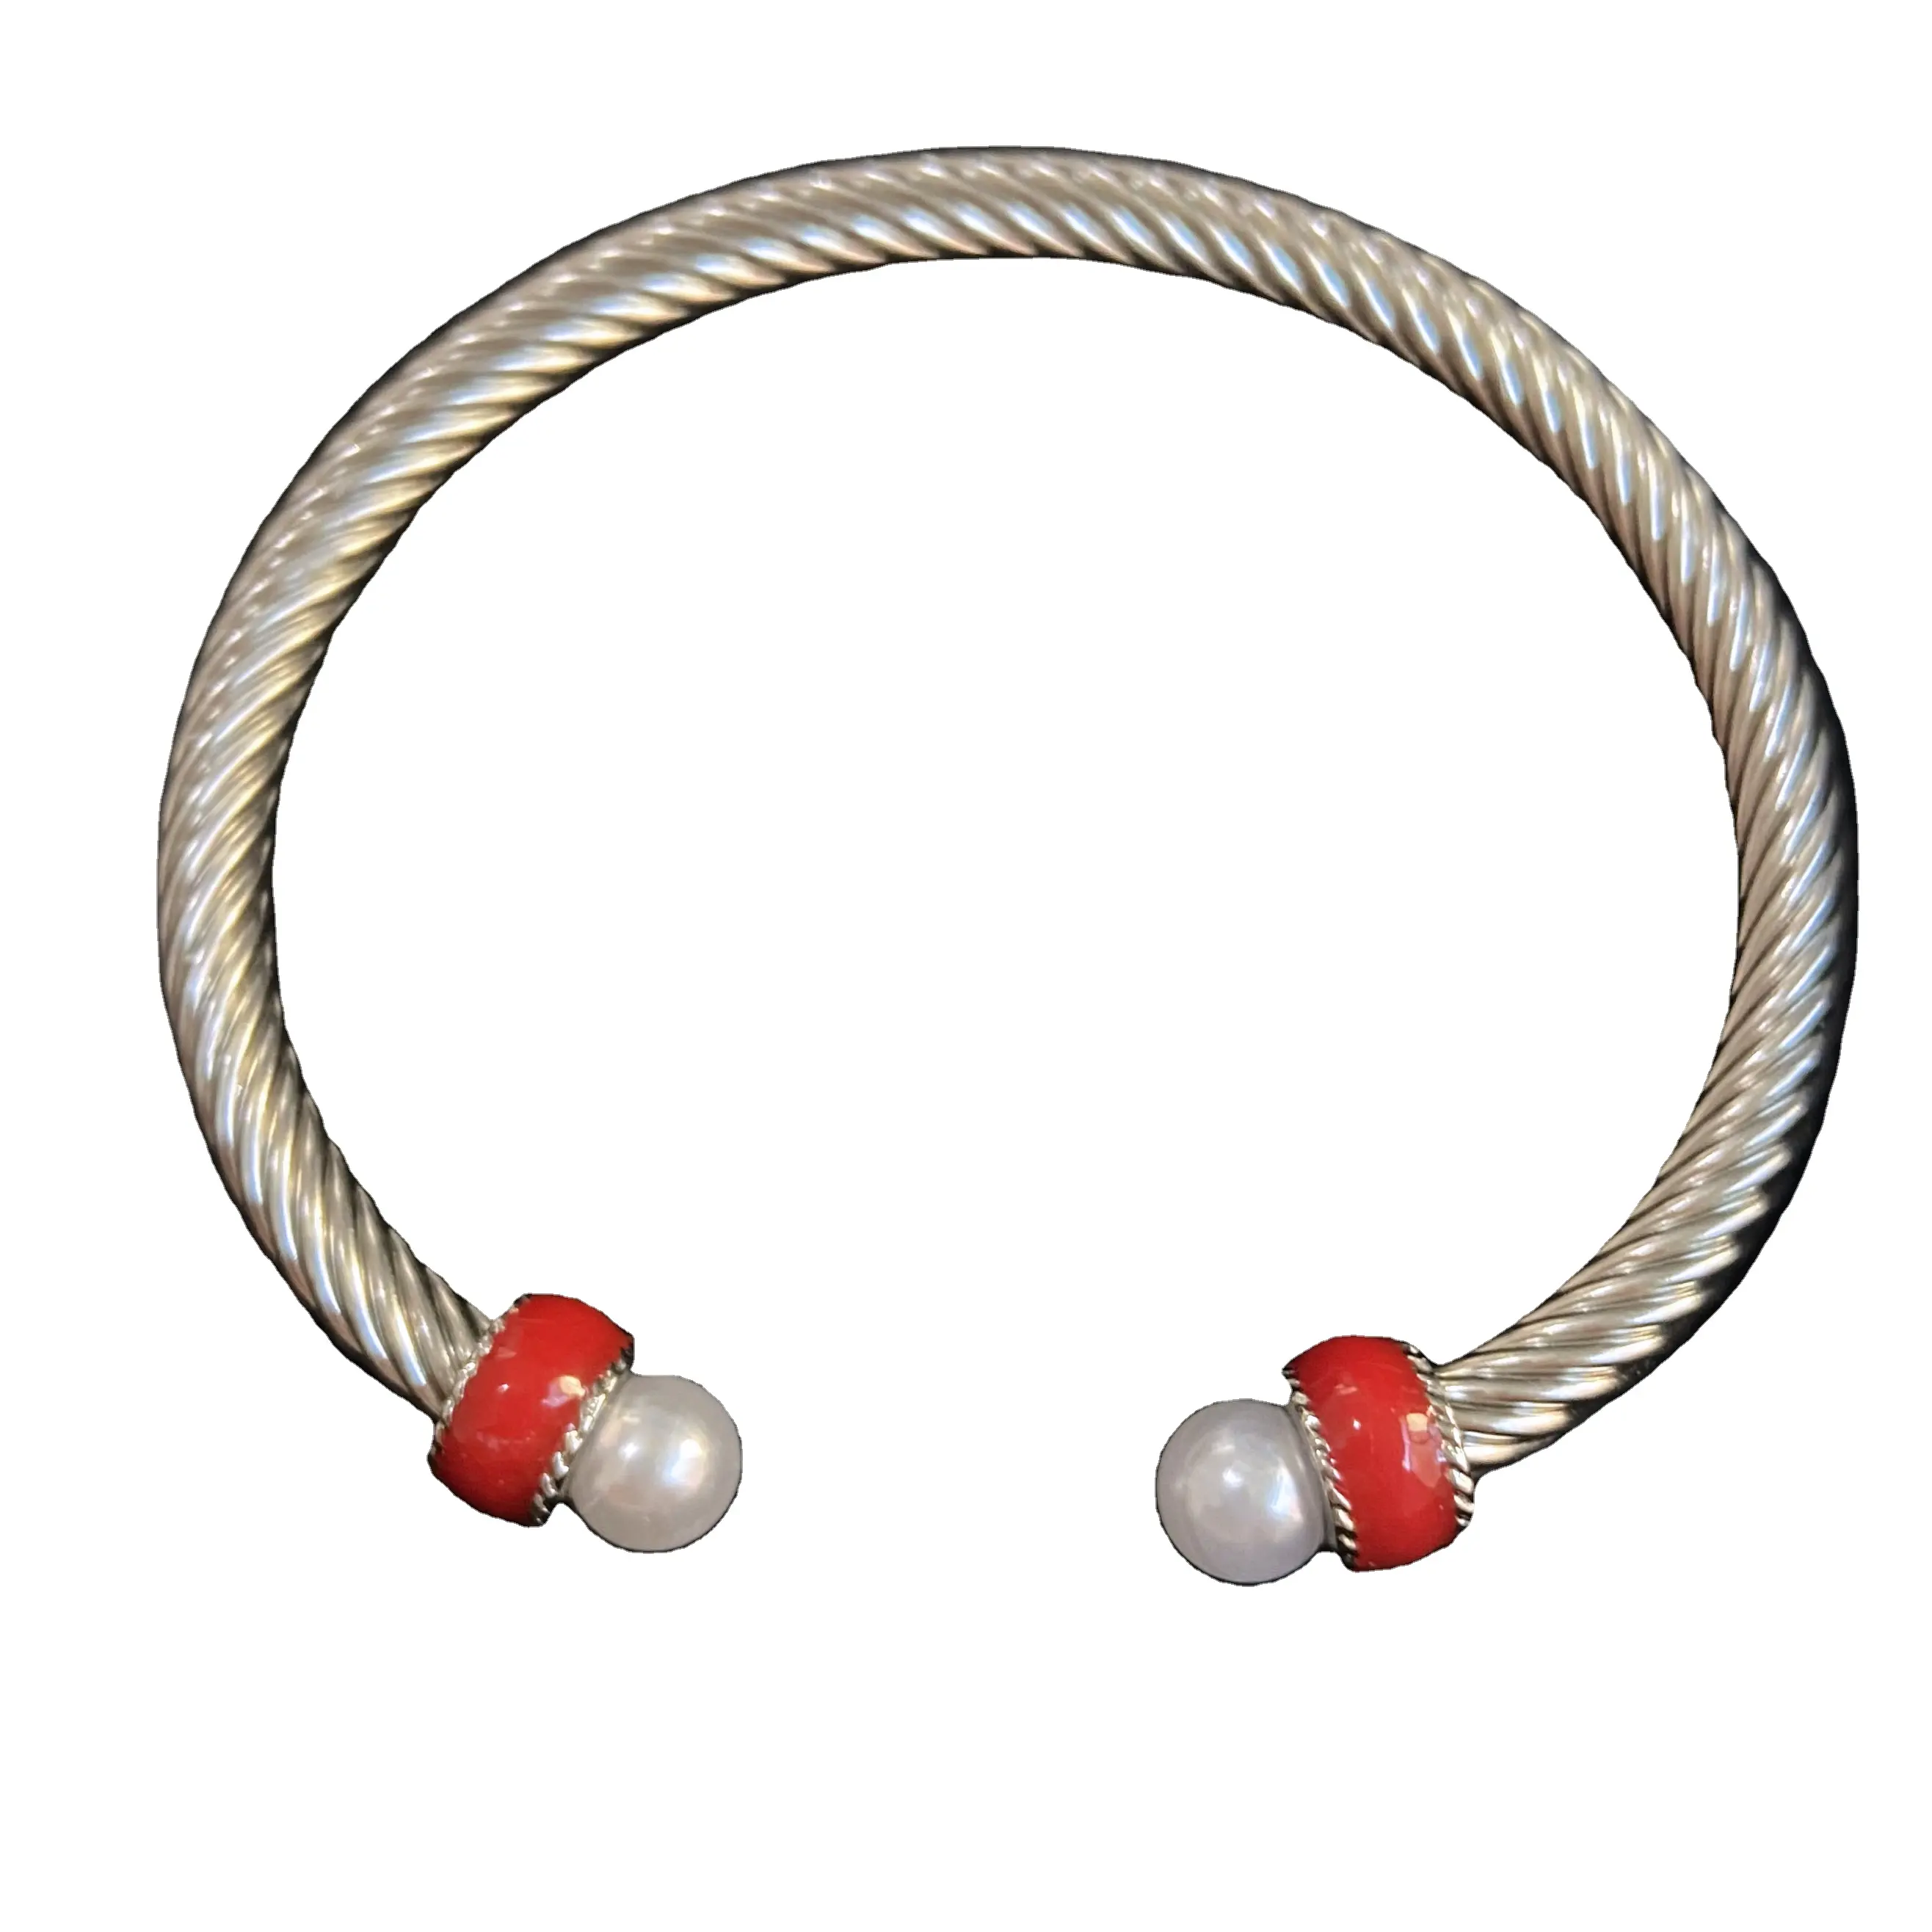 Red Rough Enamel Stainless Steel Open Bangle Custom Color Bracelets Women's Jewelry